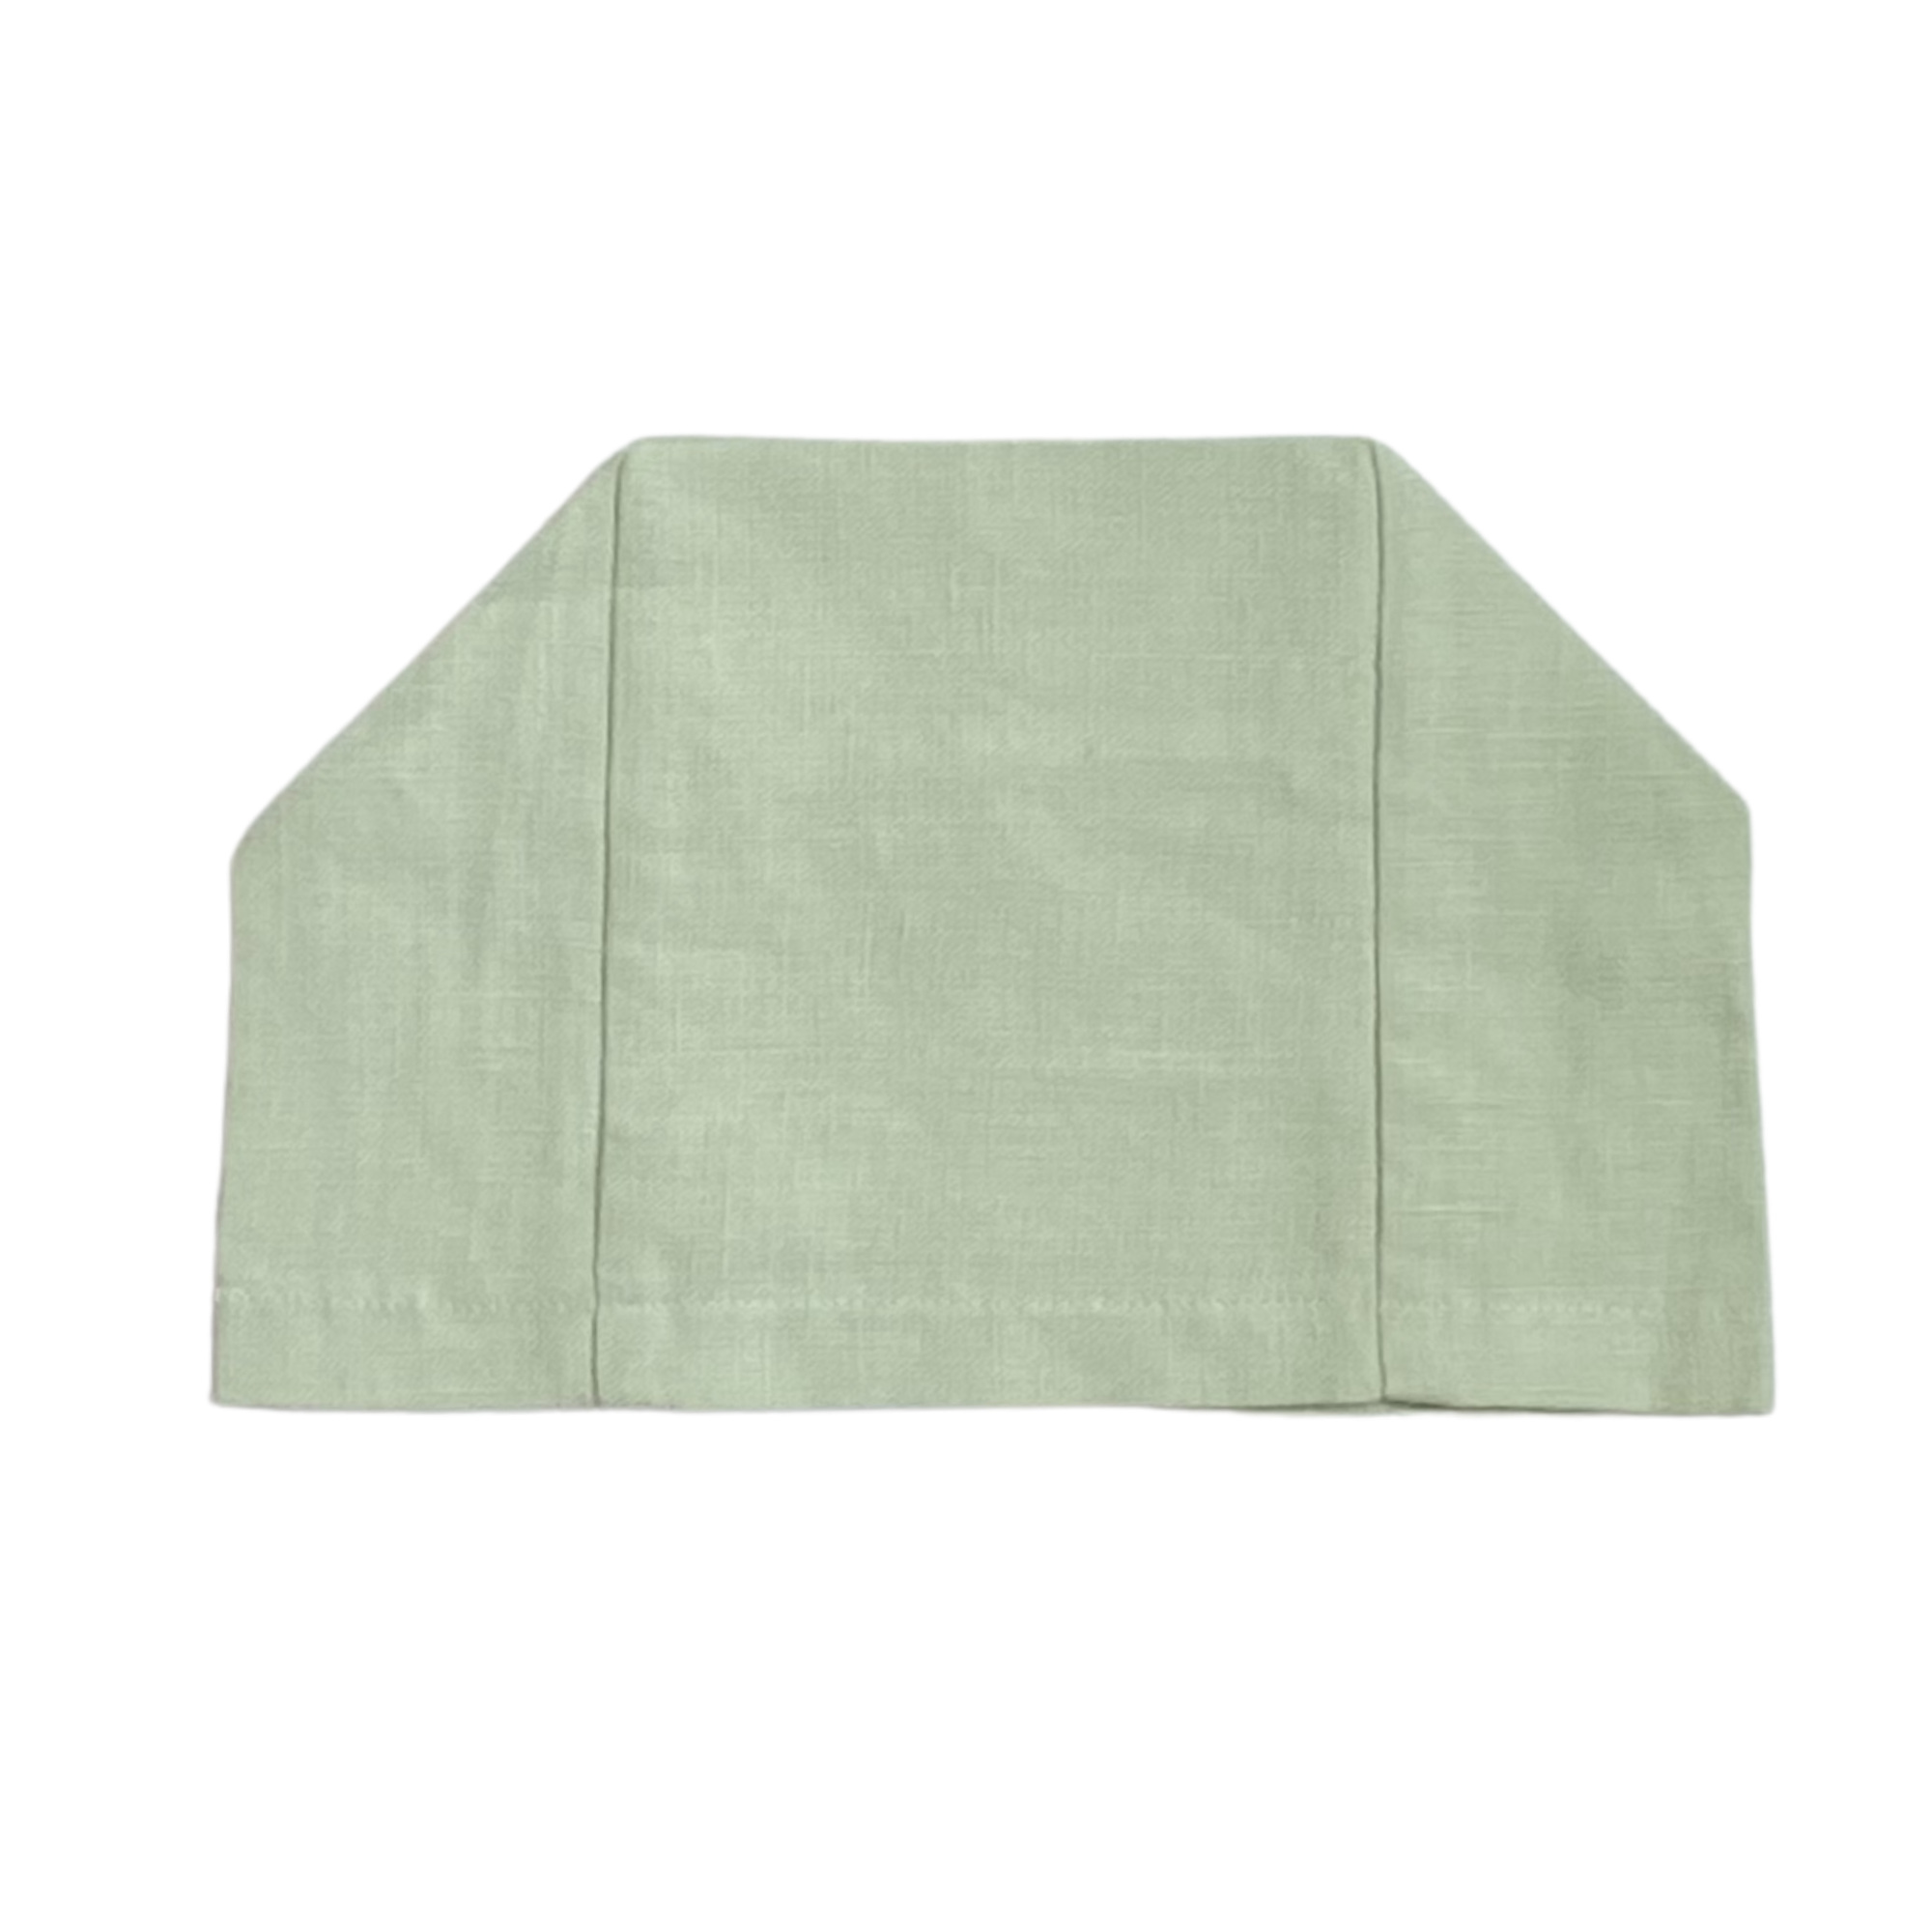 Light Sea Green 100% European linen tissue box cover